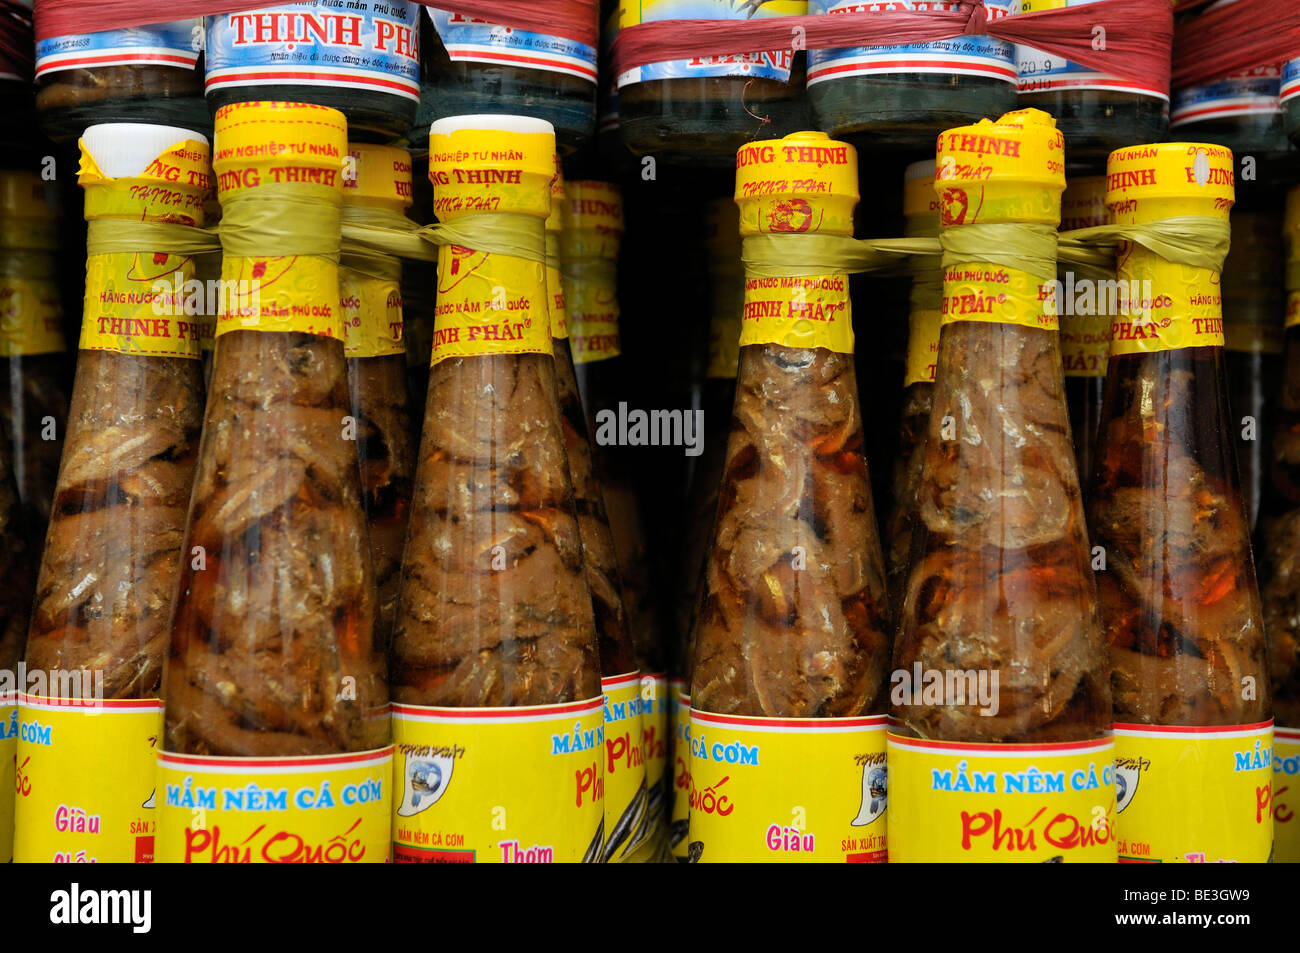 Estantería con la tradicional salsa de pescado vietnamita Nuoc mam en botellas de vidrio con tapón de plástico amarillo, Phu Quoc, Vietnam, Asia Foto de stock